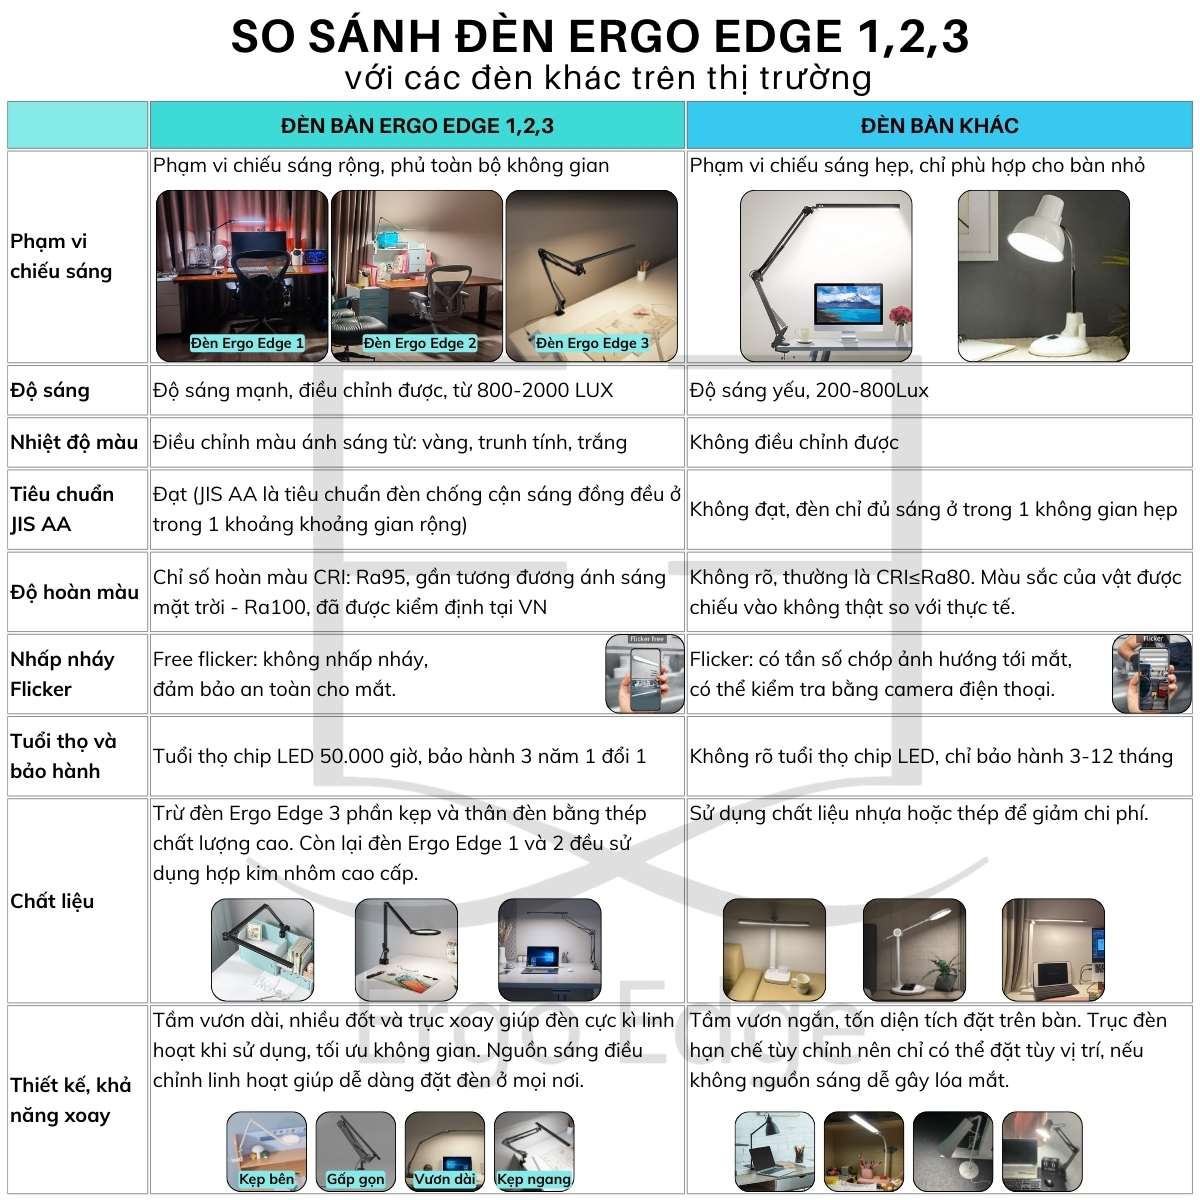 9.-So-sanh-den-Ergo-Edge-123-voi-cac-den-khac-tren-thi-truong.jpg